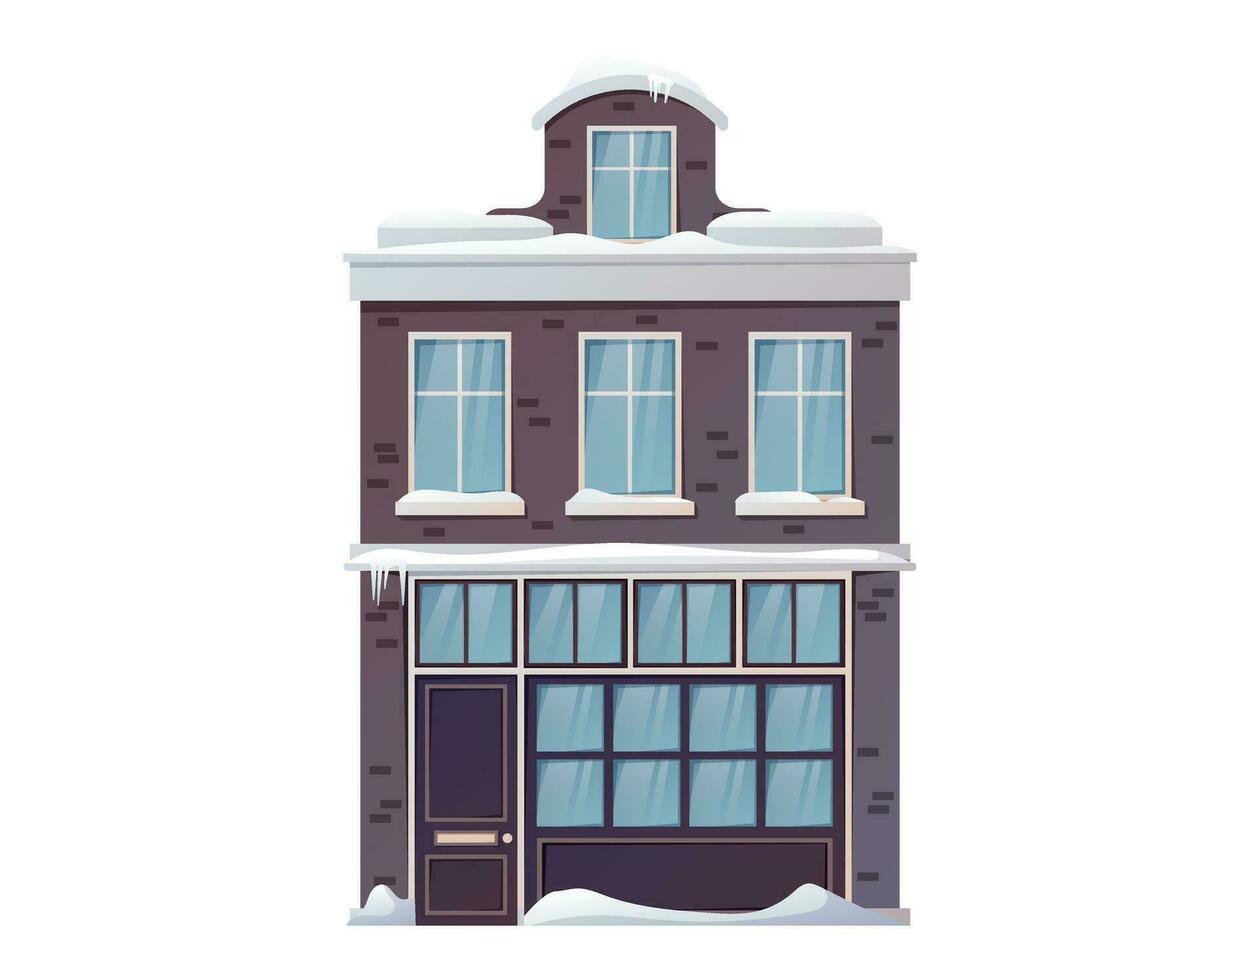 dibujos animados vector invierno casa. aislado arquitectónico moderno edificio cubierto con nieve y ventisqueros